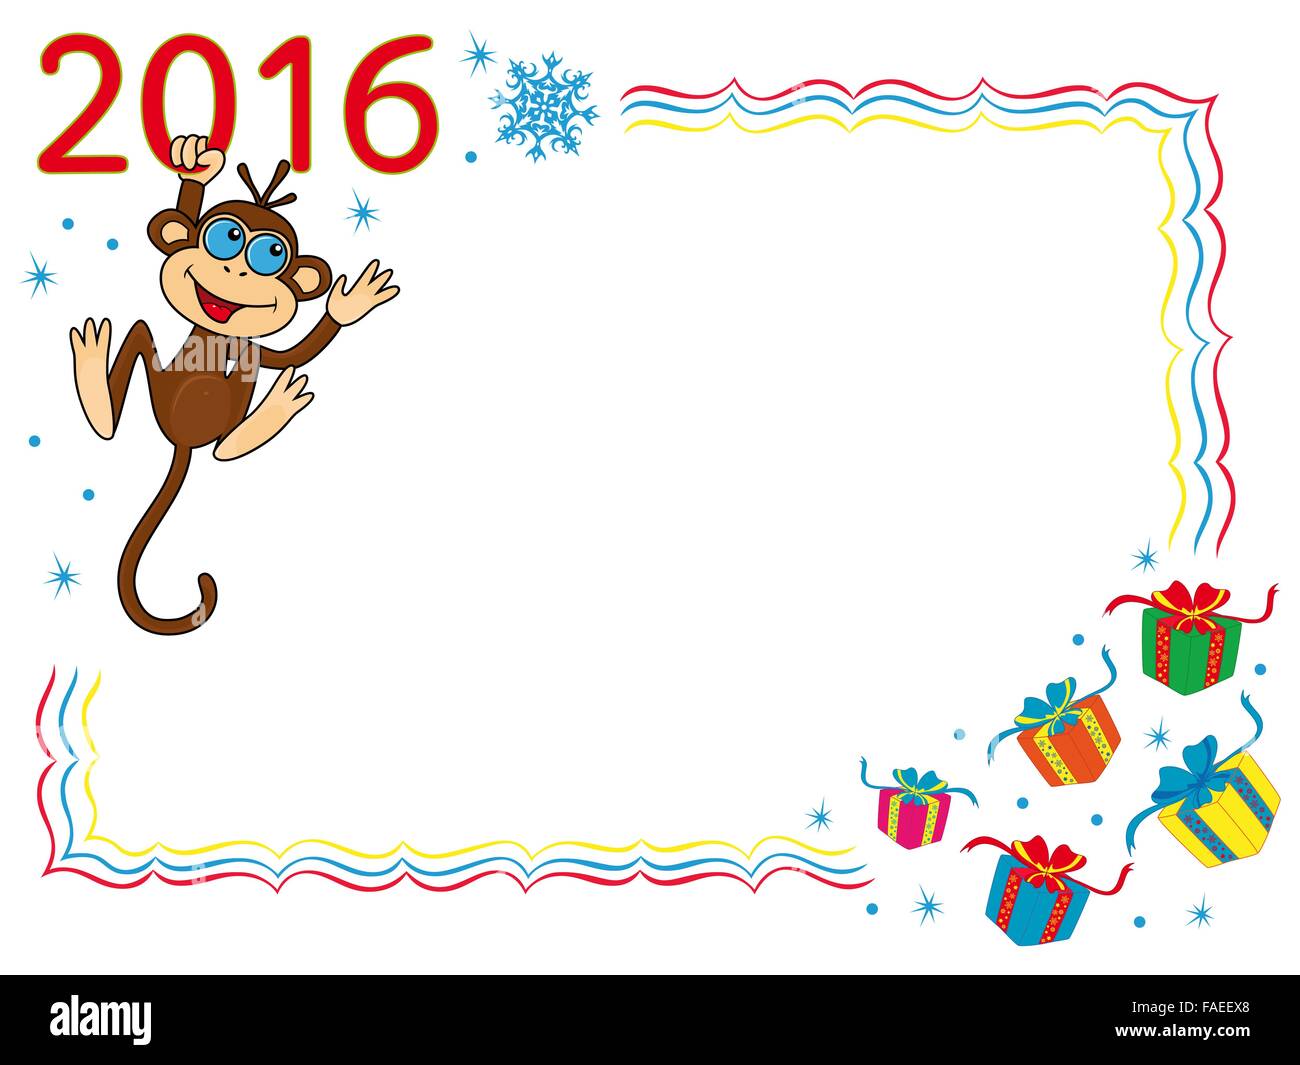 Grußkarte mit lustigen Affen, die für die Stelle der Inschrift 2016 hält und hängt es Cartoon Vektorgrafiken auf den wint Stock Vektor